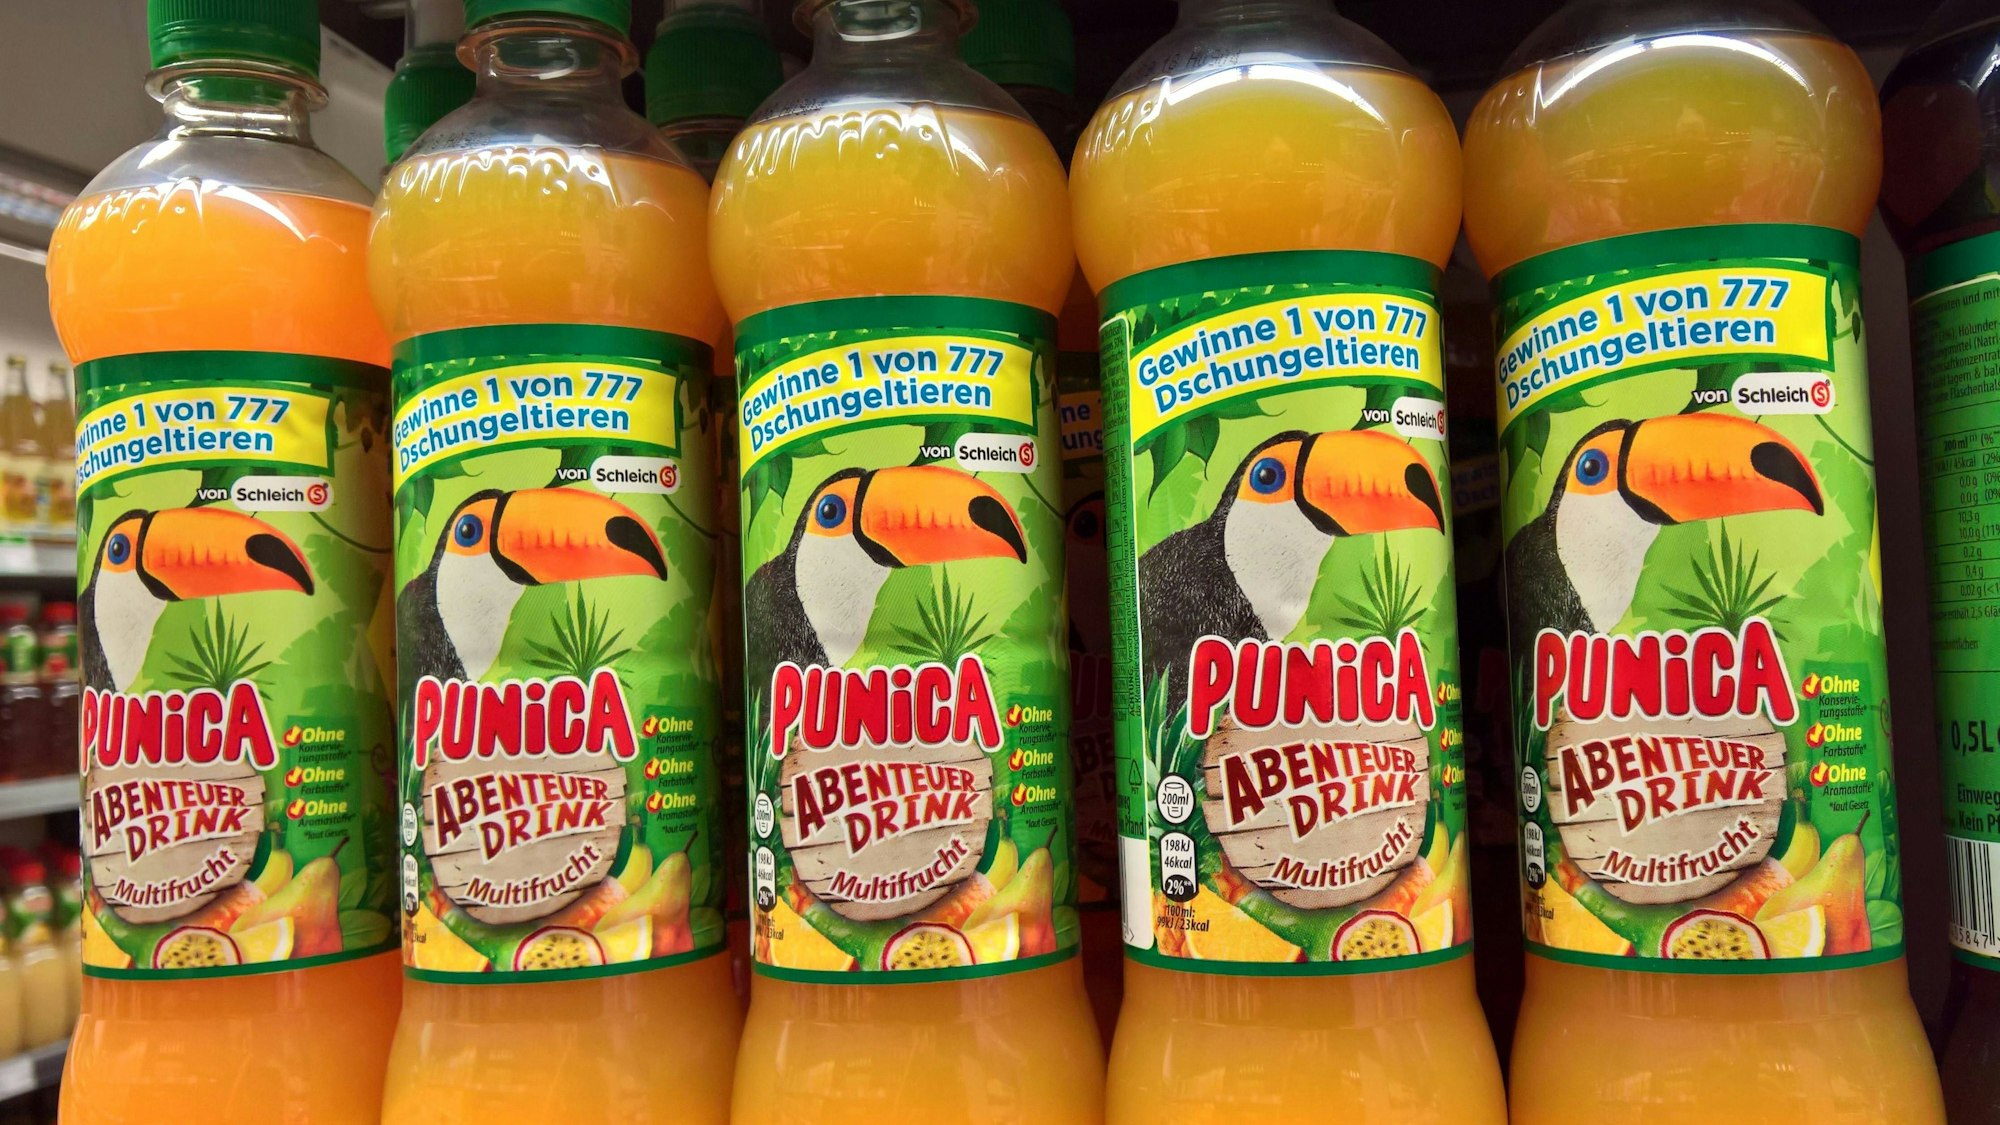 Mehrere Punica-Flaschen mit der Aufschrift „Punica Abenteuer-Drink“ sind in einem Supermarkt-Regal zu sehen.